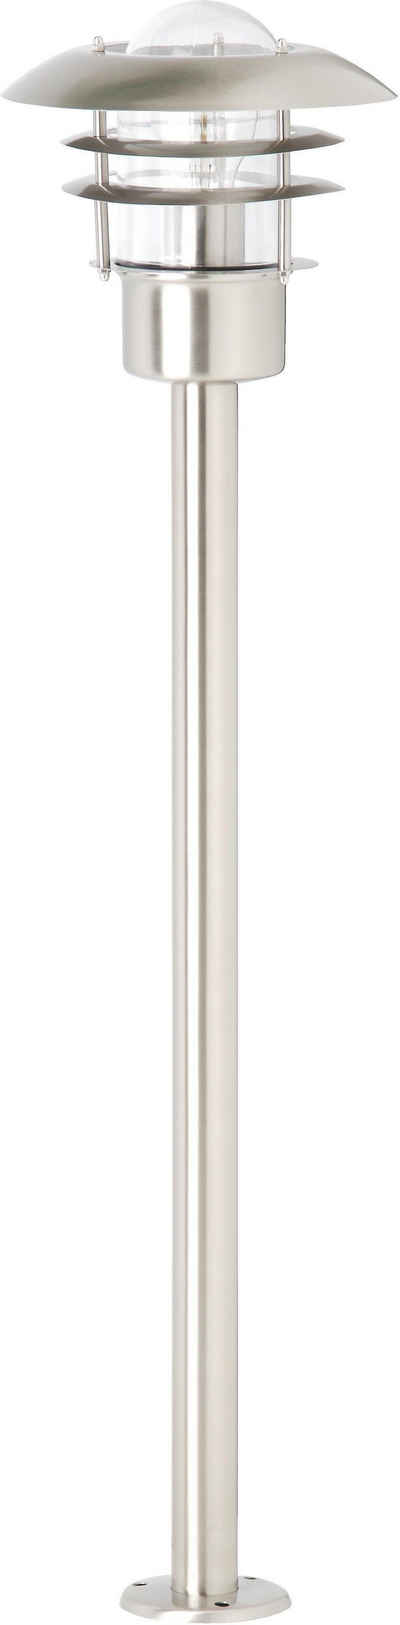 Brilliant Außen-Stehlampe TERRENCE, ohne Leuchtmittel, 90 cm Höhe, Ø 22 cm, E27, IP44, Metall/Glas, edelstahl